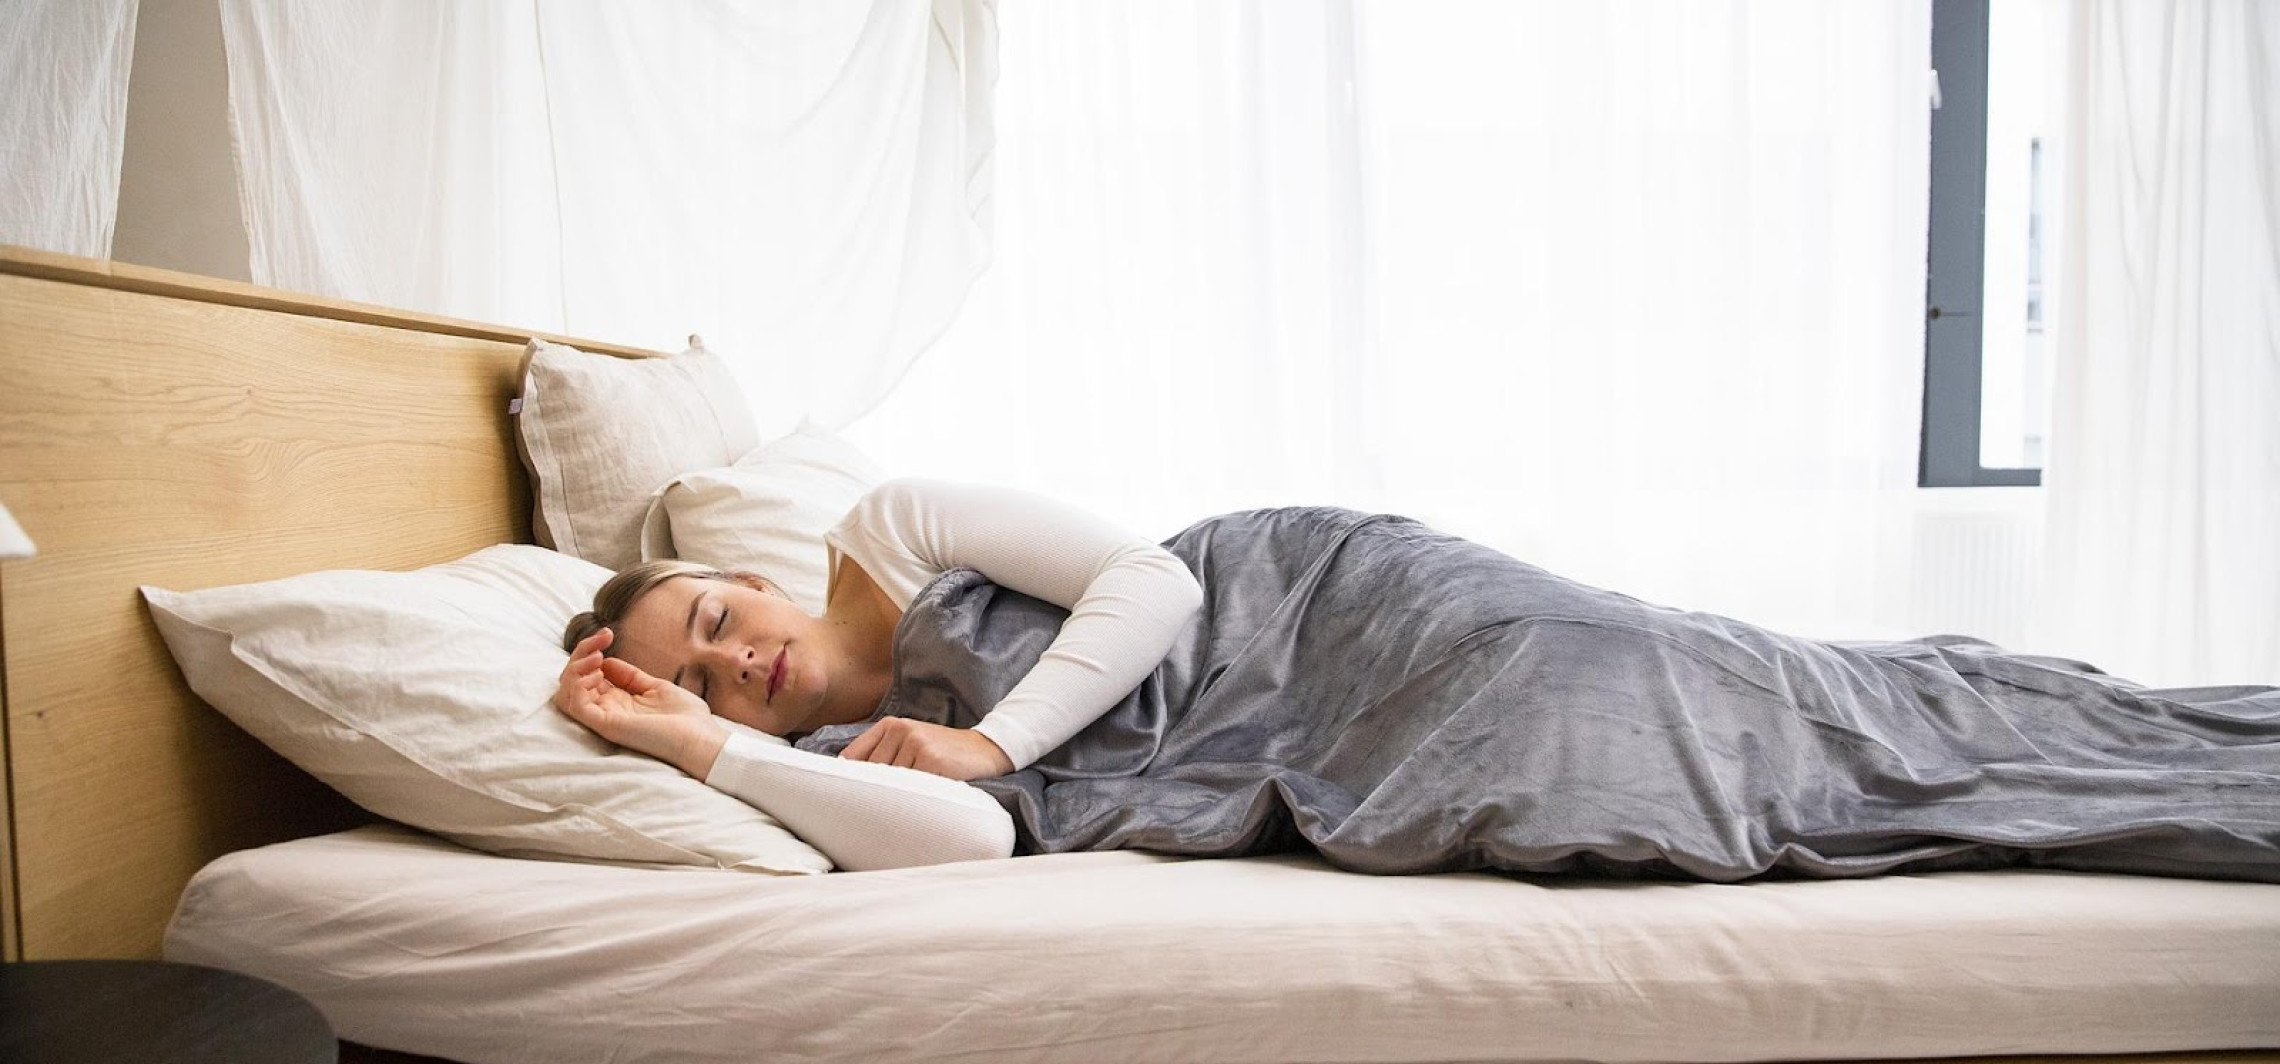 Region - Właściwy wybór materaca jest kluczem do zdrowego snu